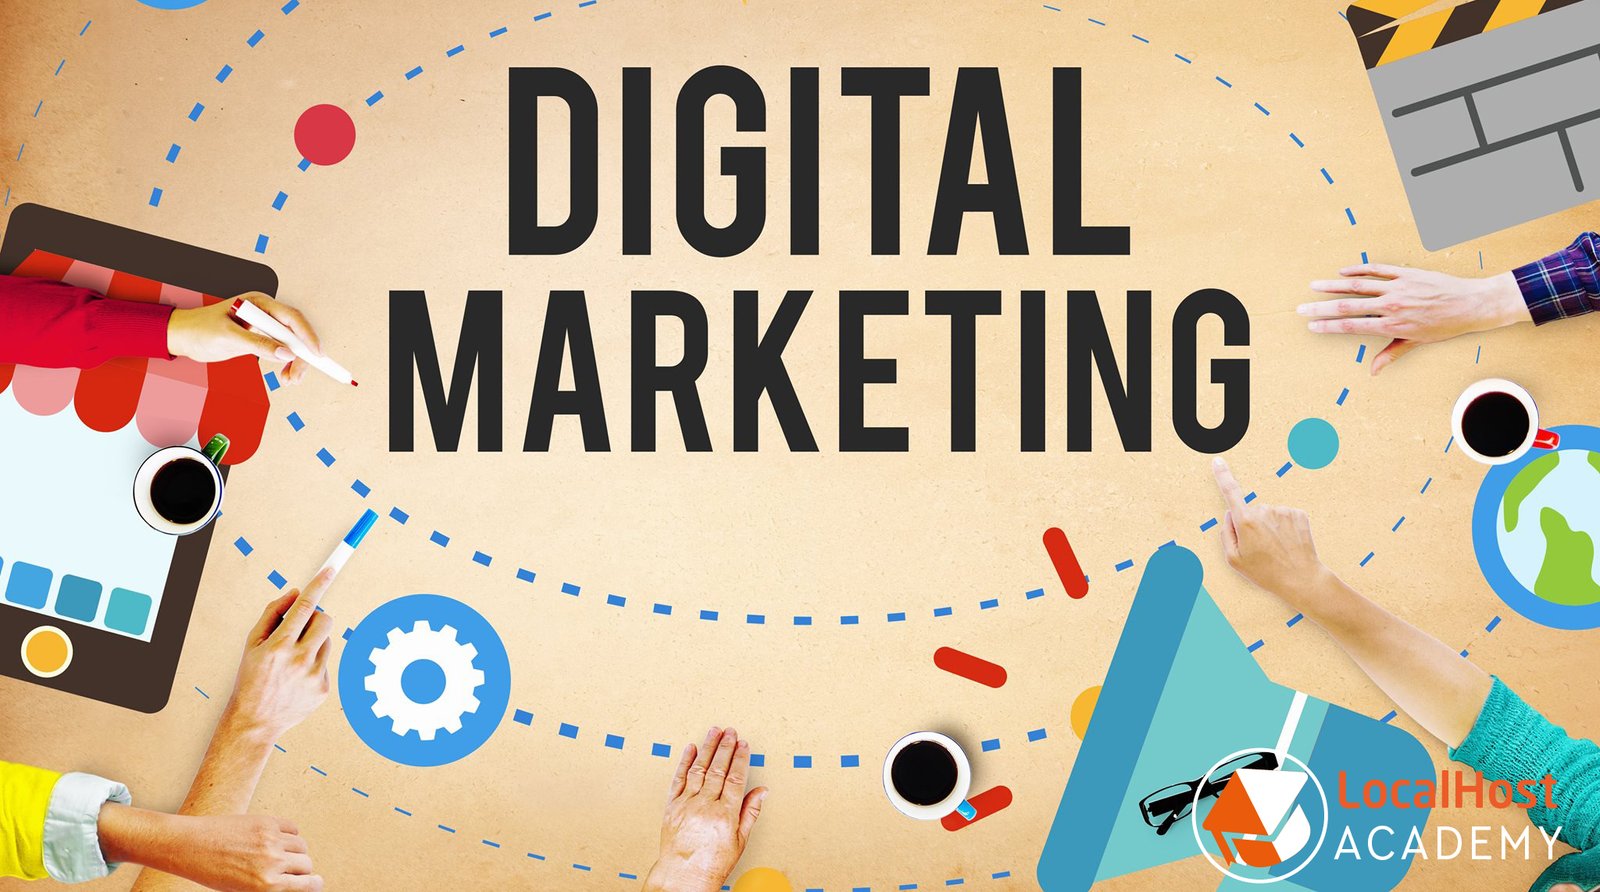  Formation  en Marketing  Digital  LocalHost Academy 